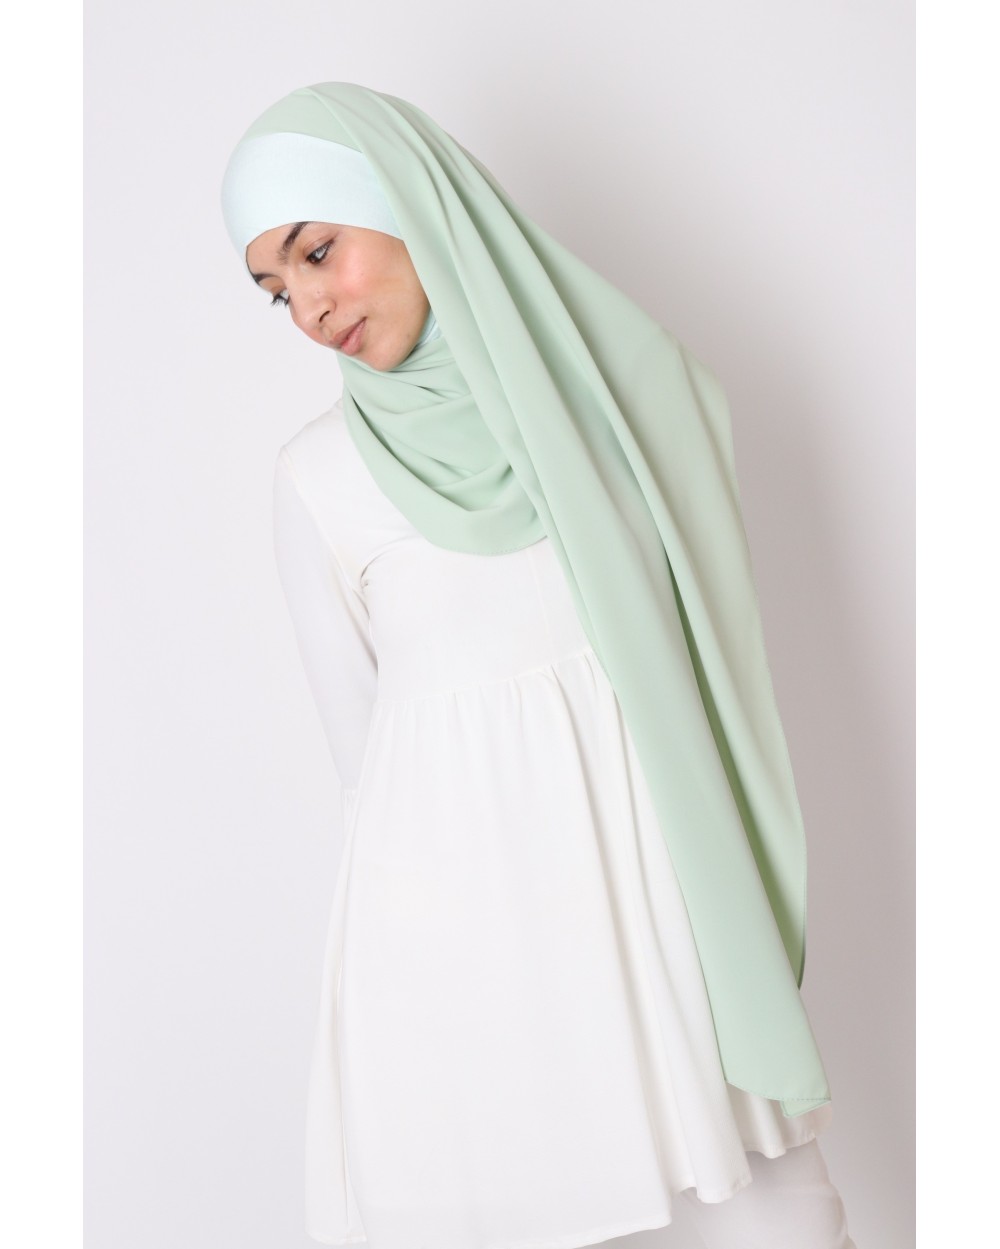 Hijab à enfiler cagoule intégré soie de médine